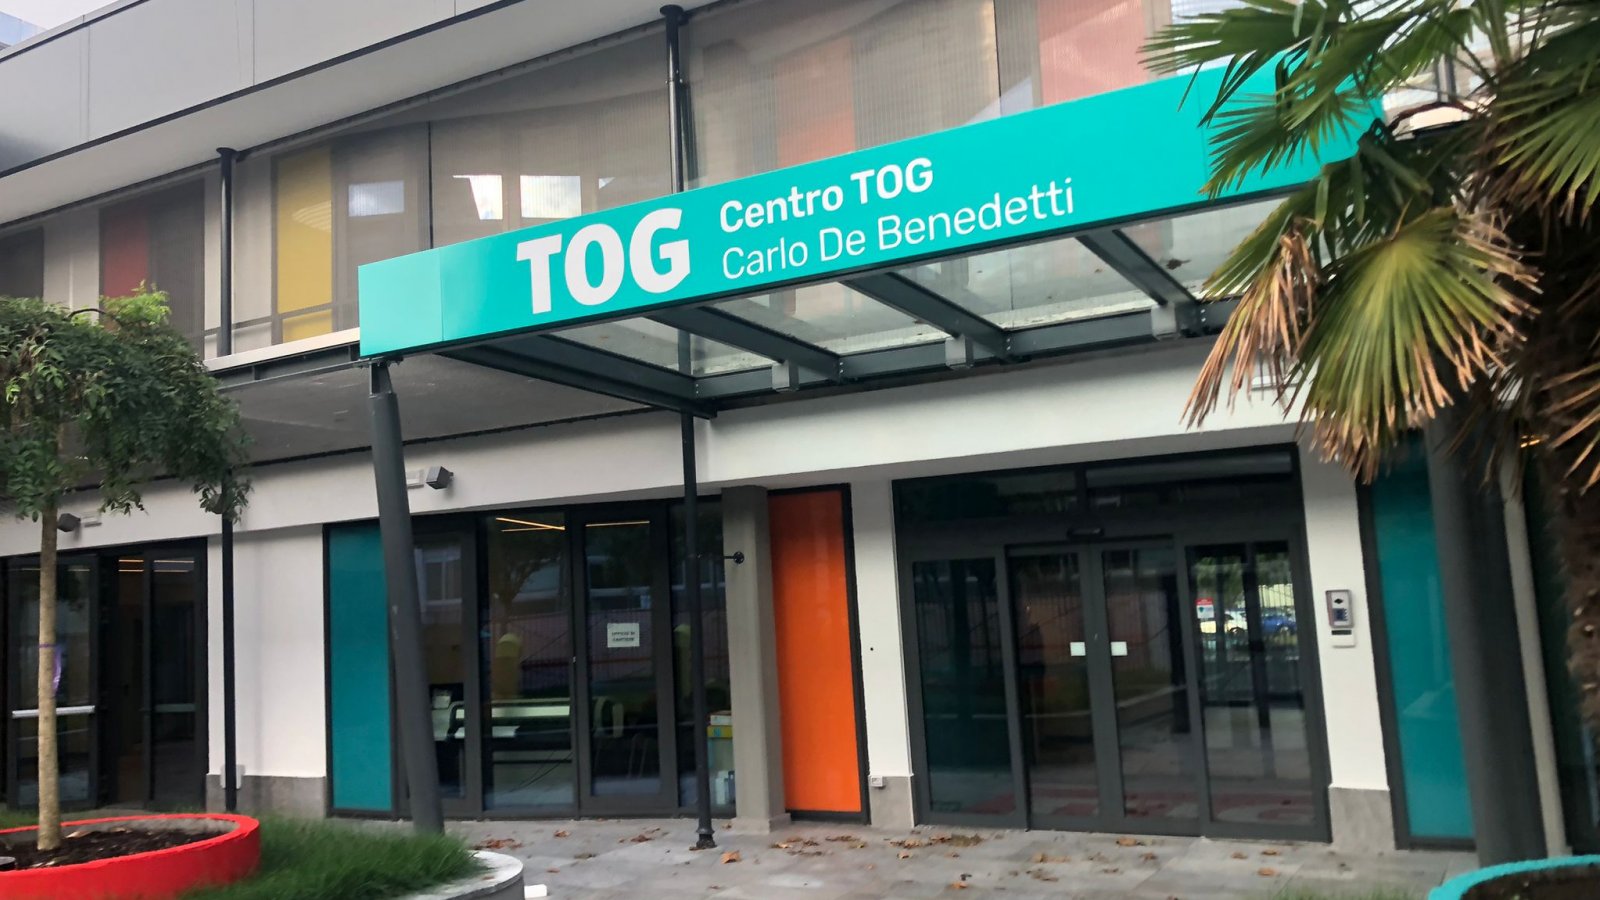 L’heure de l’inauguration approche pour le centre TOG Carlo De Benedetti!